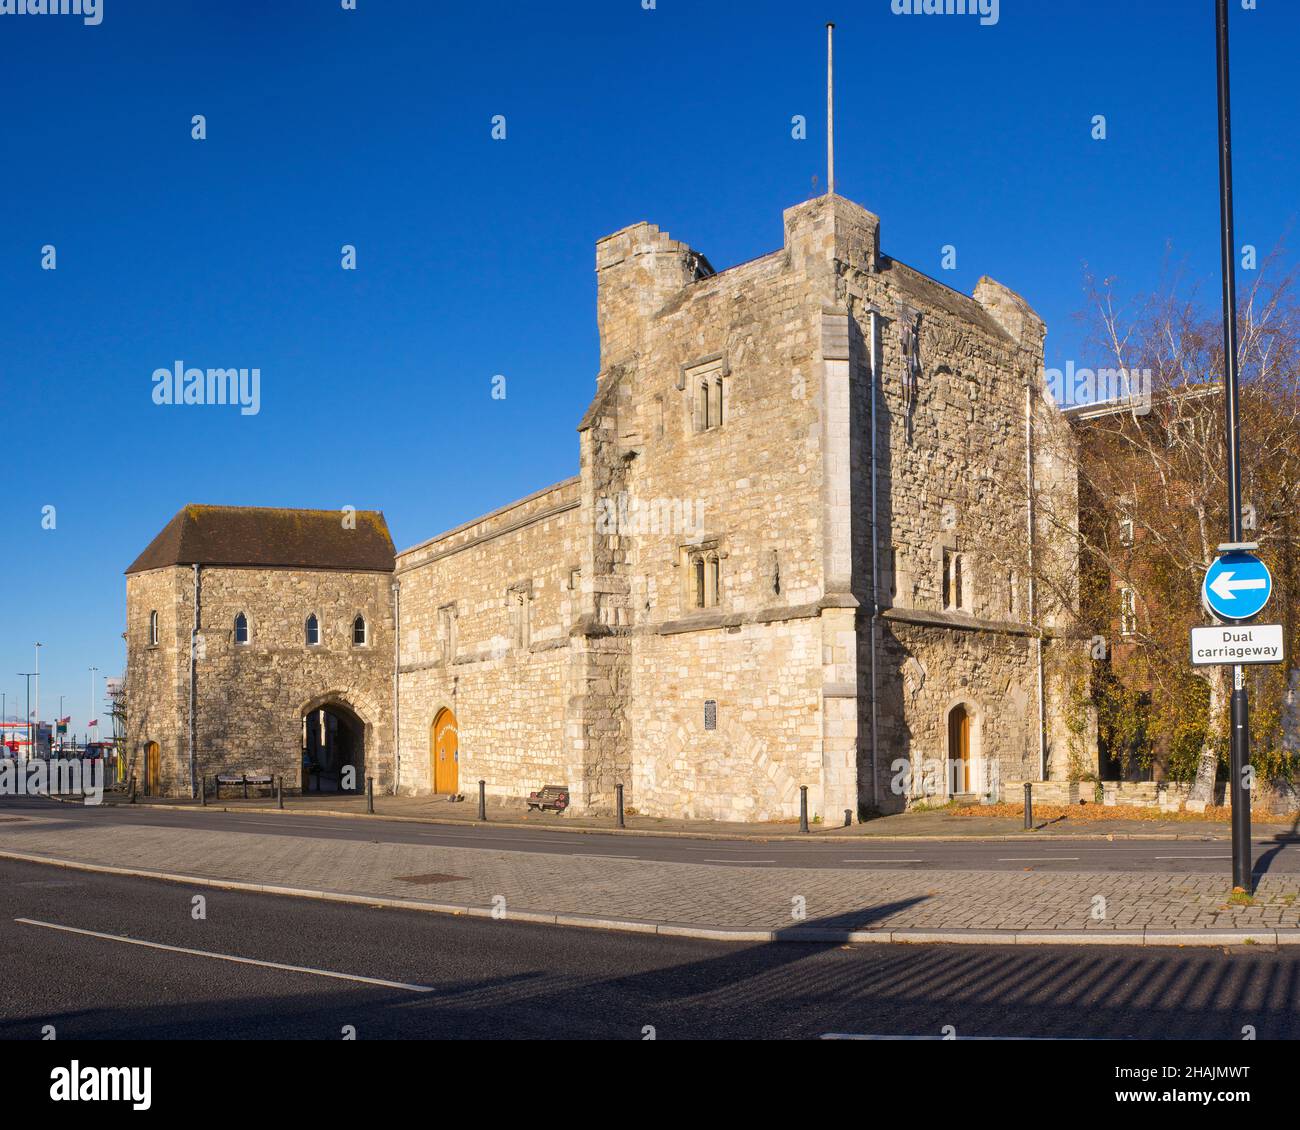 God's House Tower, également connu sous le nom de Saltmarsh Gate, un portier datant de 13th ans situé dans les remparts médiévaux de la ville de Southampton Banque D'Images